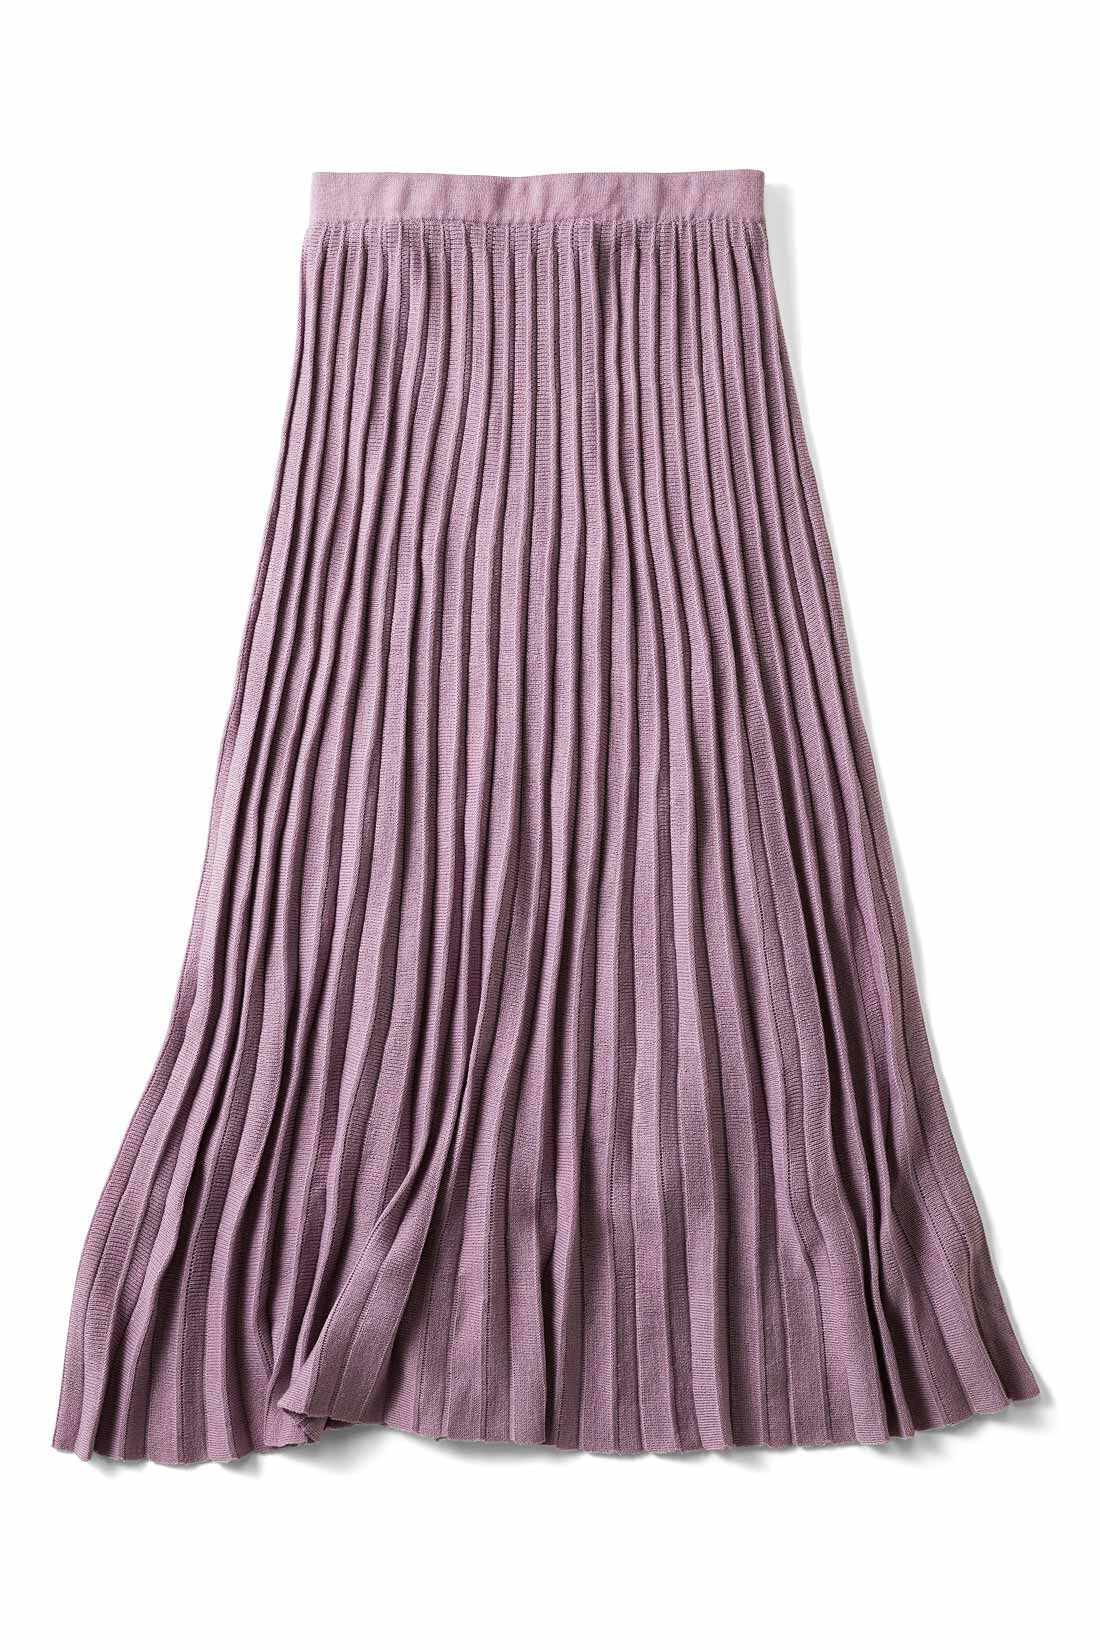 Real Stock|きらら舎コラボ！ ウニの殻みたいなニットプリーツスカート〈紫〉|ウニ殻っぽいカラーをチョイス！